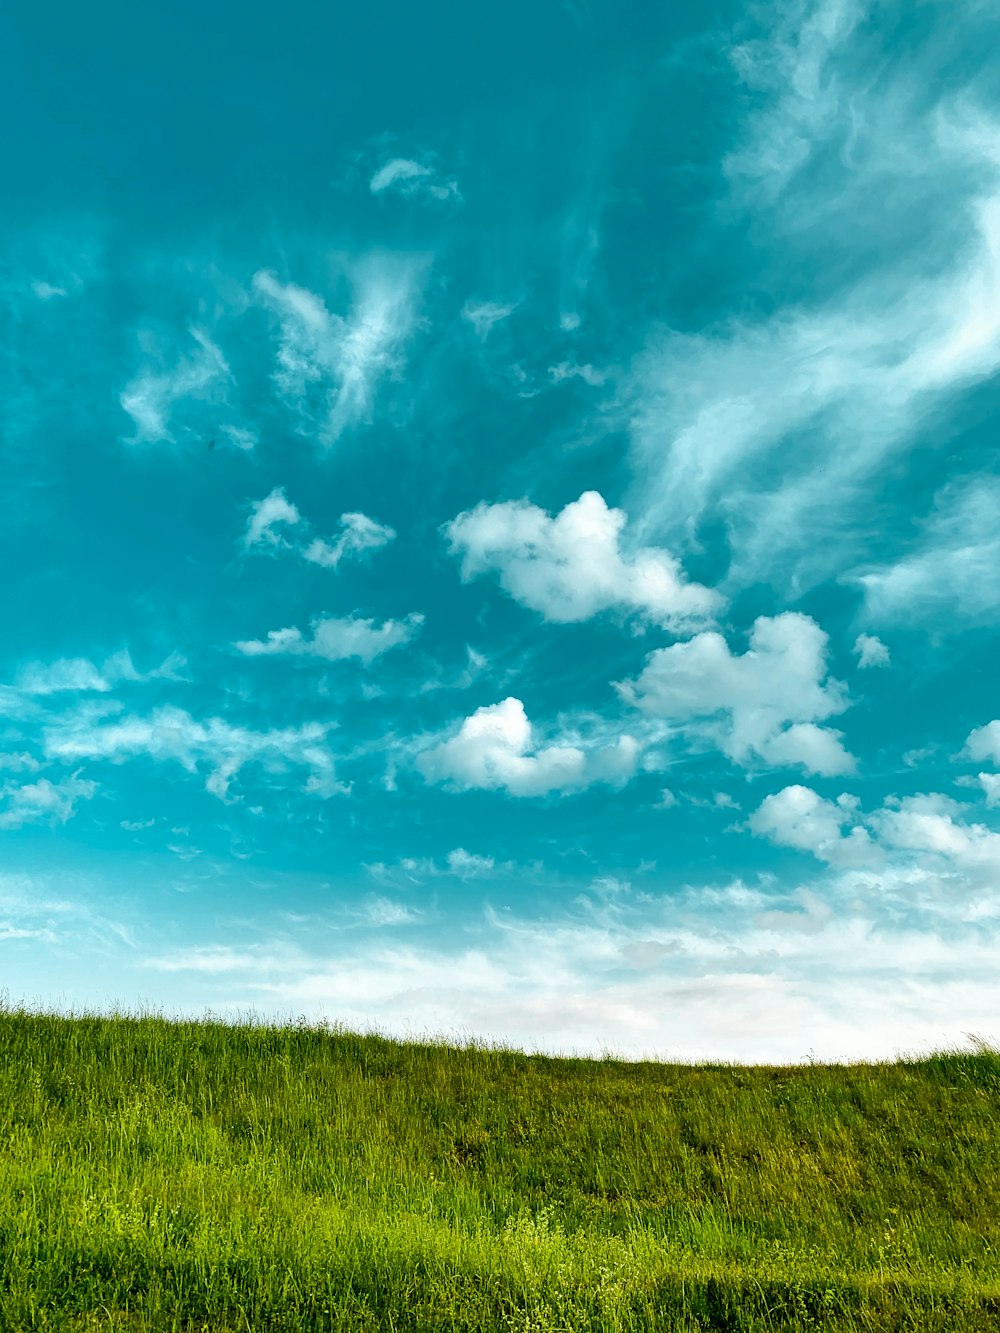 Những hình ảnh Bầu trời xanh với đám mây đẹp như mơ sẽ đưa bạn đến một thế giới của bầu trời tuyệt đẹp. Tận hưởng những khung cảnh đầy ấn tượng với màu xanh ngân điểm phối cùng với đám mây lơ lửng trên bầu trời.